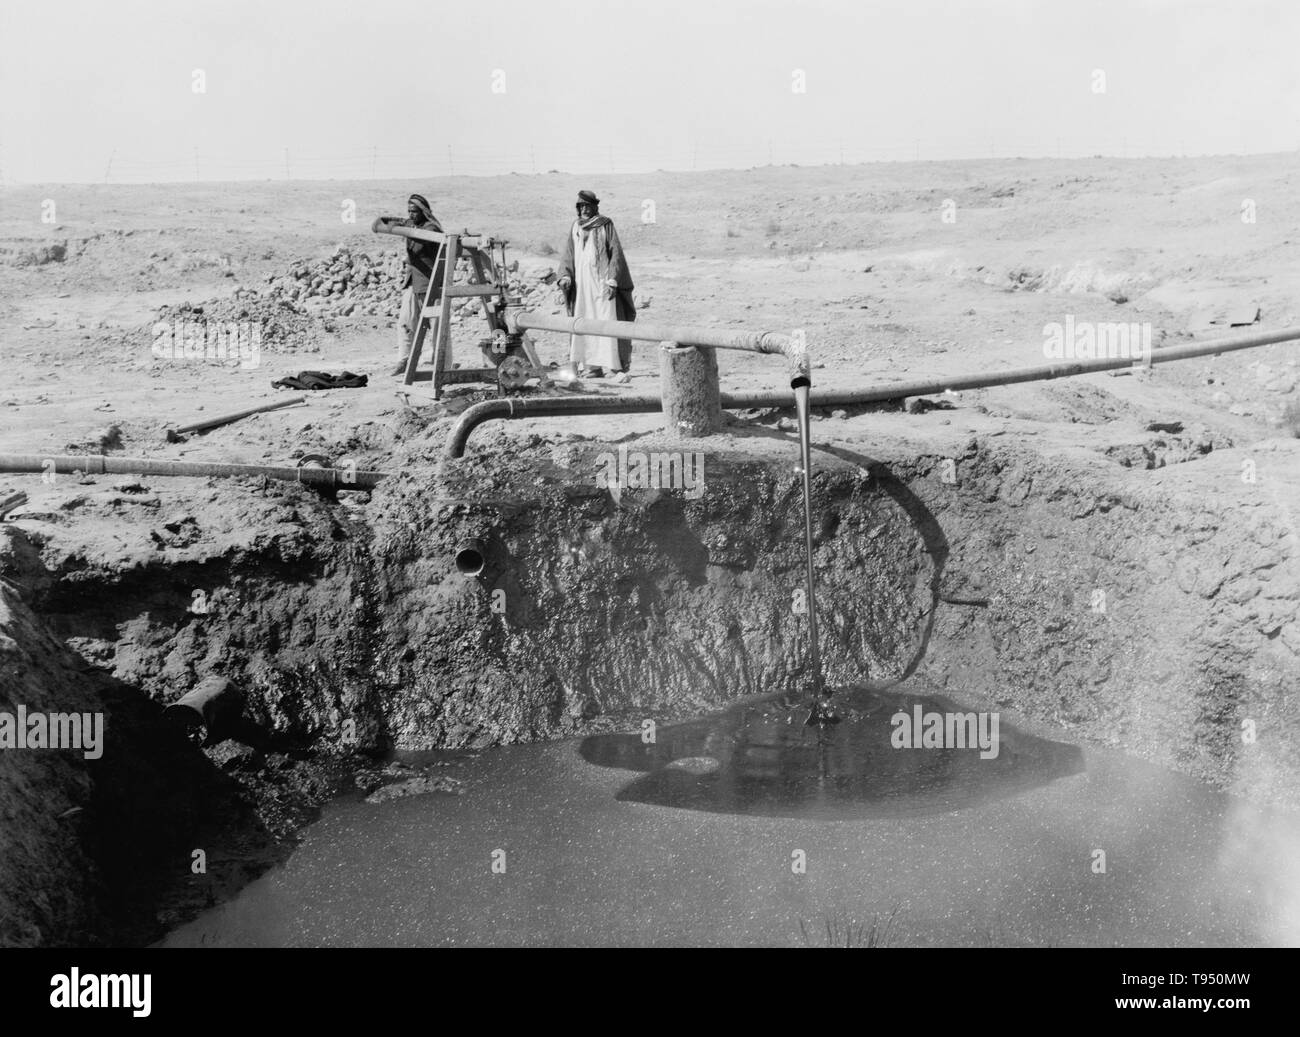 Les hommes du bitume d'un puits de pompage en 1932, dans une zone de puits bitumineux au sud de Mossoul, en Irak. Le bitume est un mélange d'hydrocarbures visqueux noir obtenu naturellement ou comme un résidu de la distillation du pétrole. Il est utilisé pour la route et les toitures. Banque D'Images